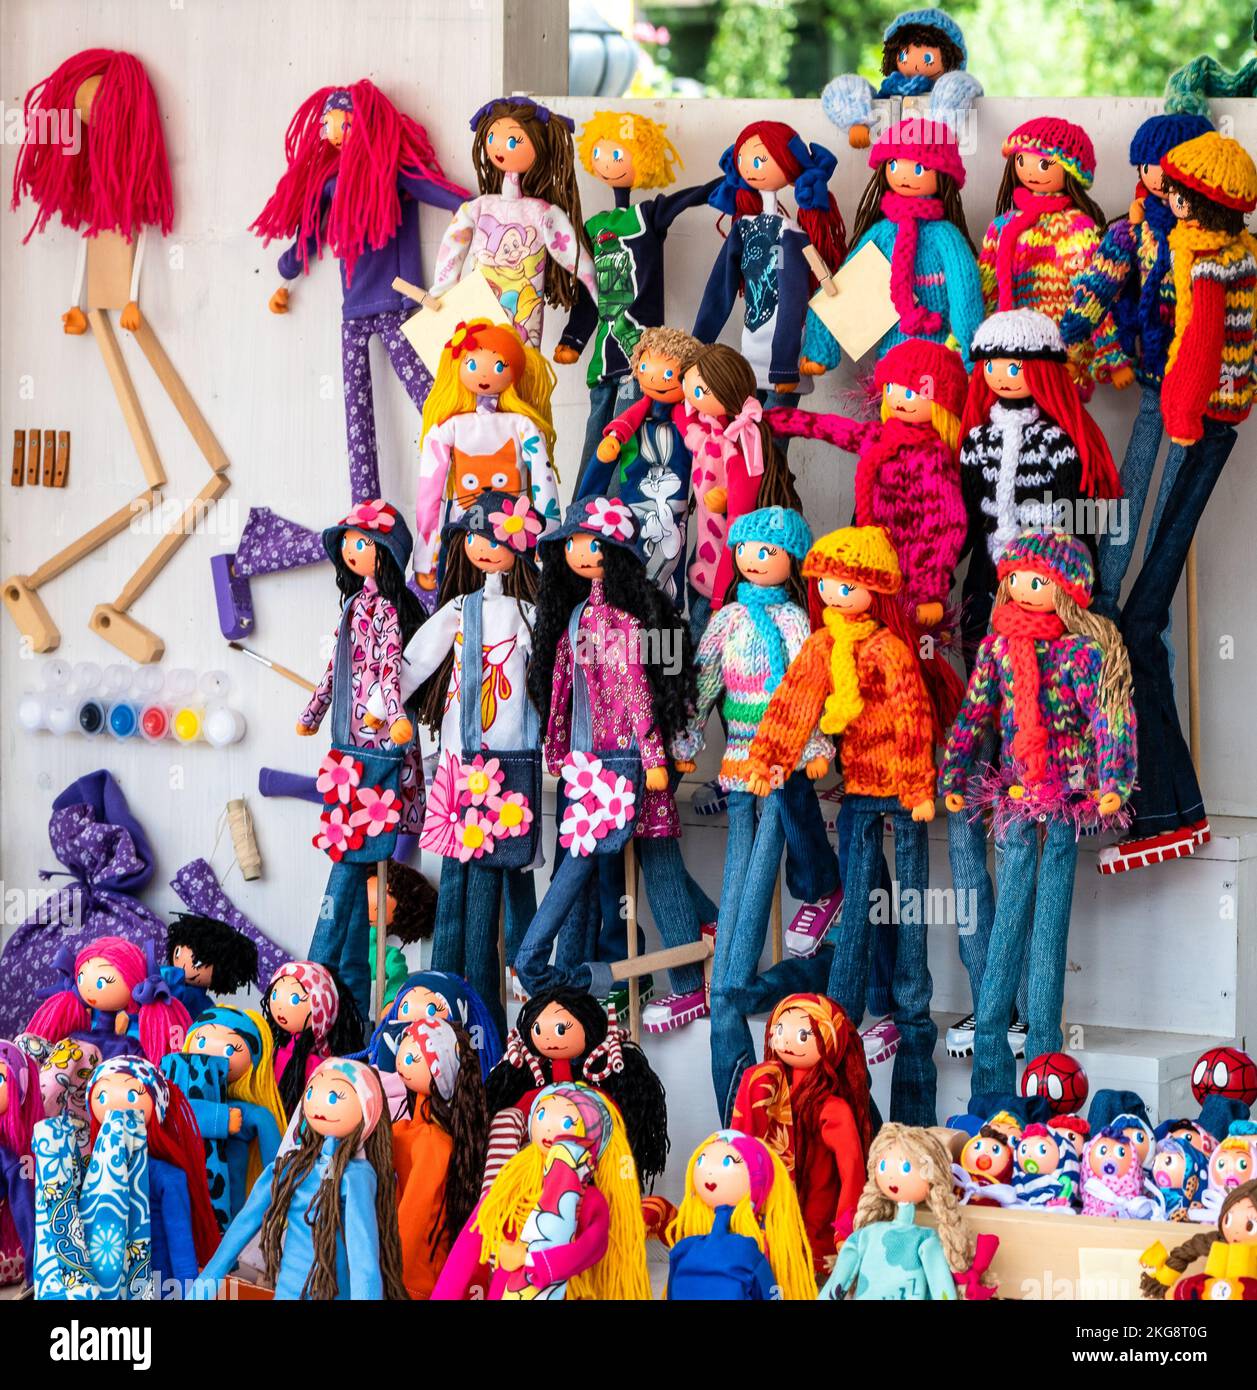 Una exhibición de muñecos de trapo de juguete hechos de madera y tela de colores brillantes - regalo para el bebé Foto de stock